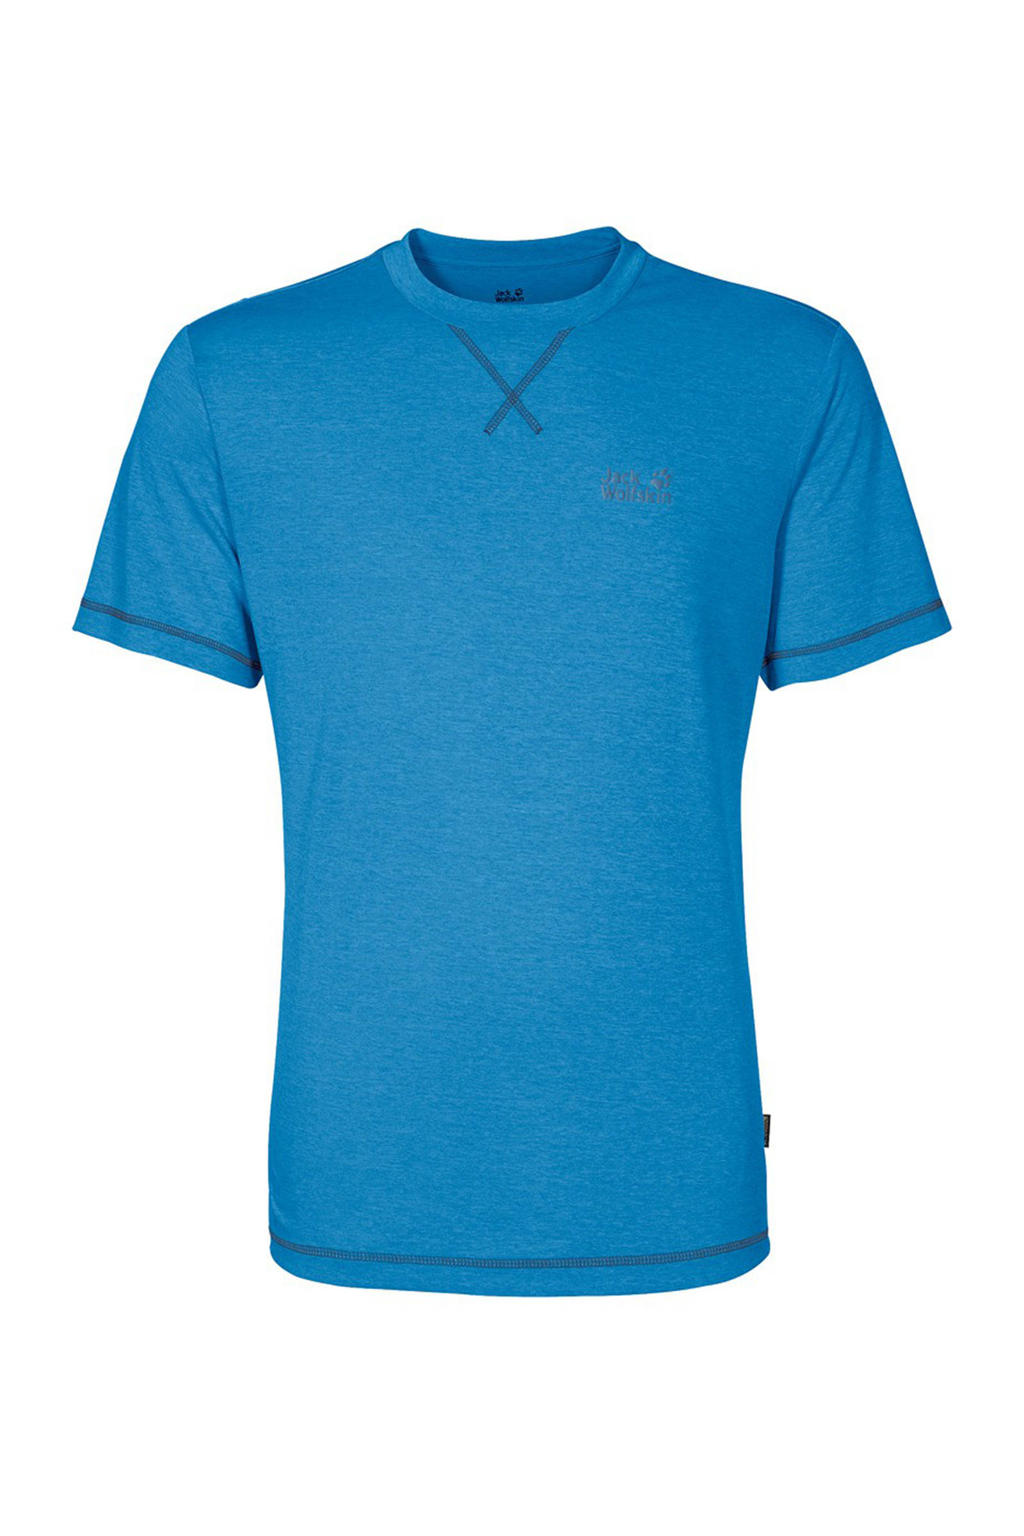 Blauwe heren Jack Wolfskin outdoor T-shirt van polyester met korte mouwen